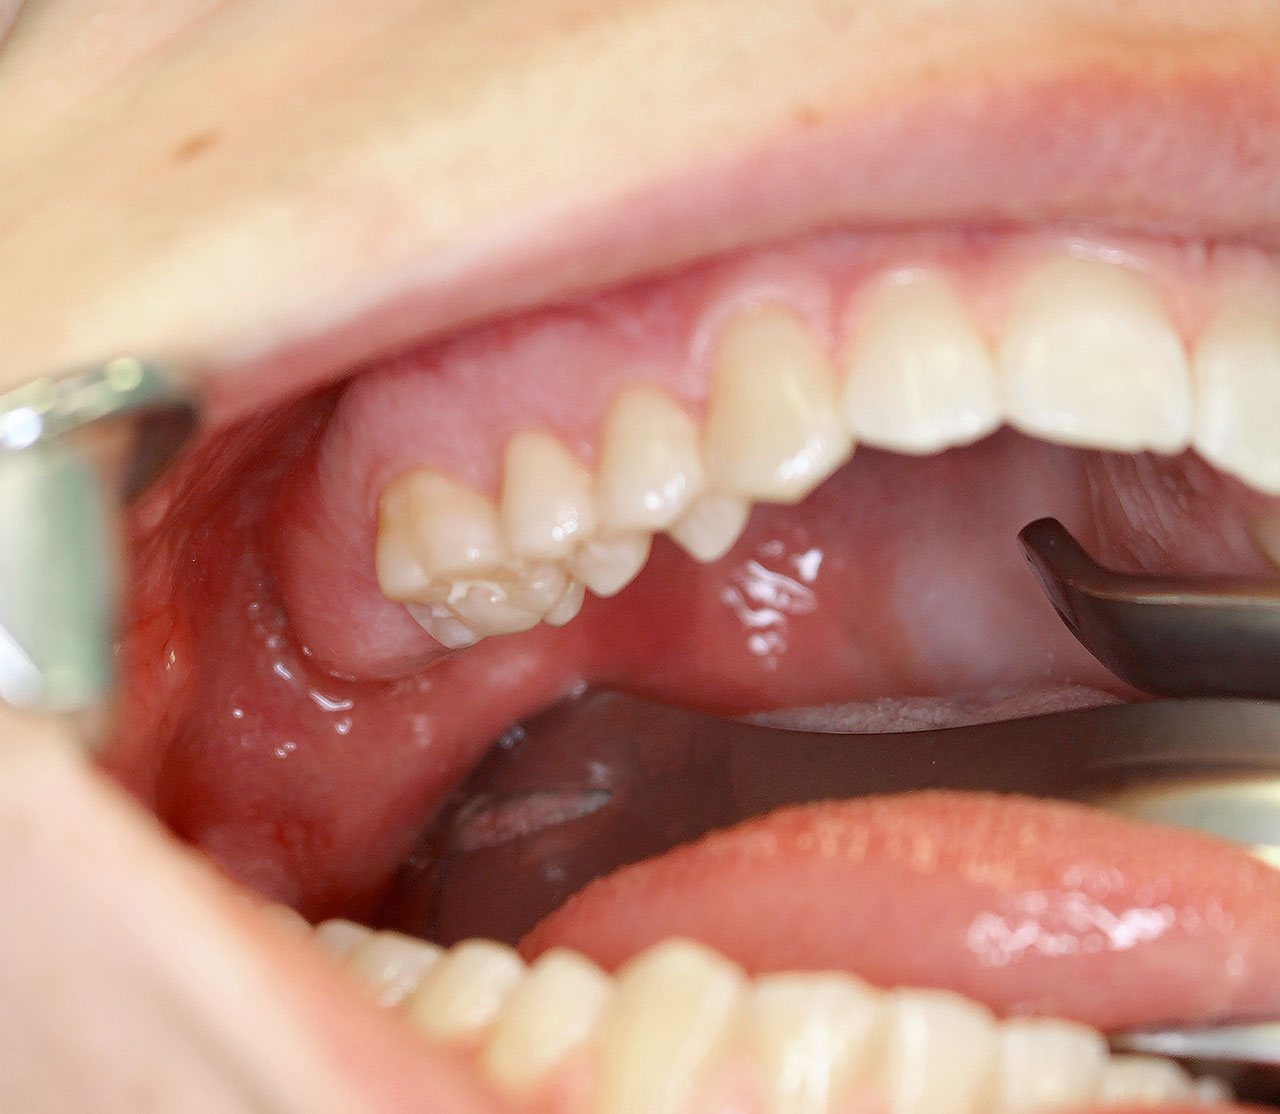 Abb. 2 Bei der klinischen Untersuchung zeigt sich, dass Zahn 17 fehlt. Der Kieferkamm scheint distal von Zahn 16 etwas verdickt zu sein, die Schleimhaut ist unauffällig.